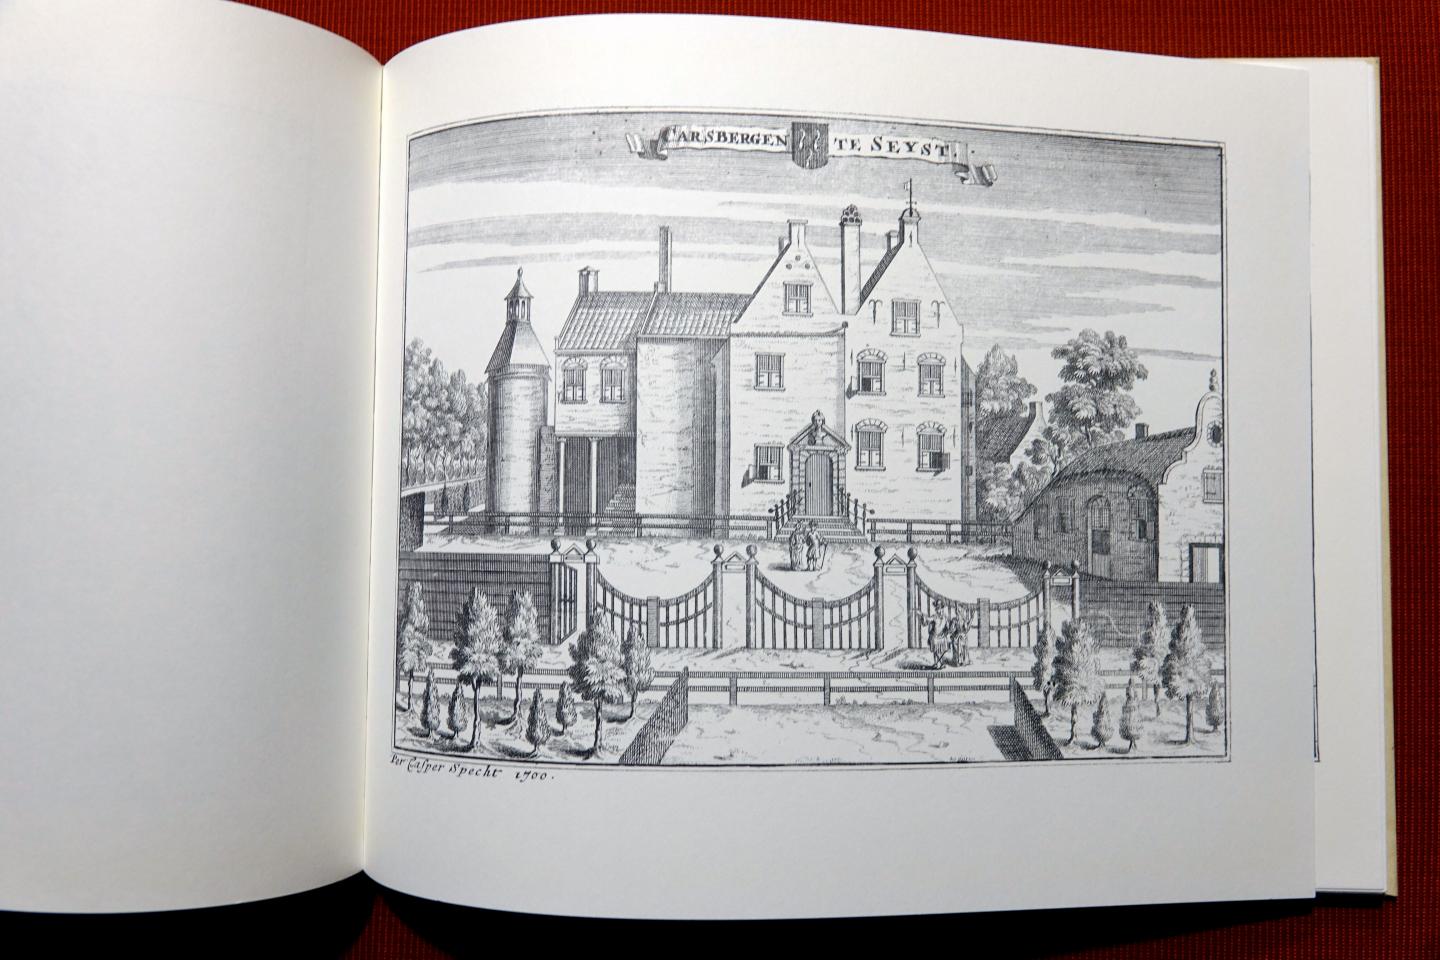 Specht, Casper (1698),Meulenkamp, W. - De Ridder-matige huysen en gesigten in de provincie van Utrecht / facsimile druk 1